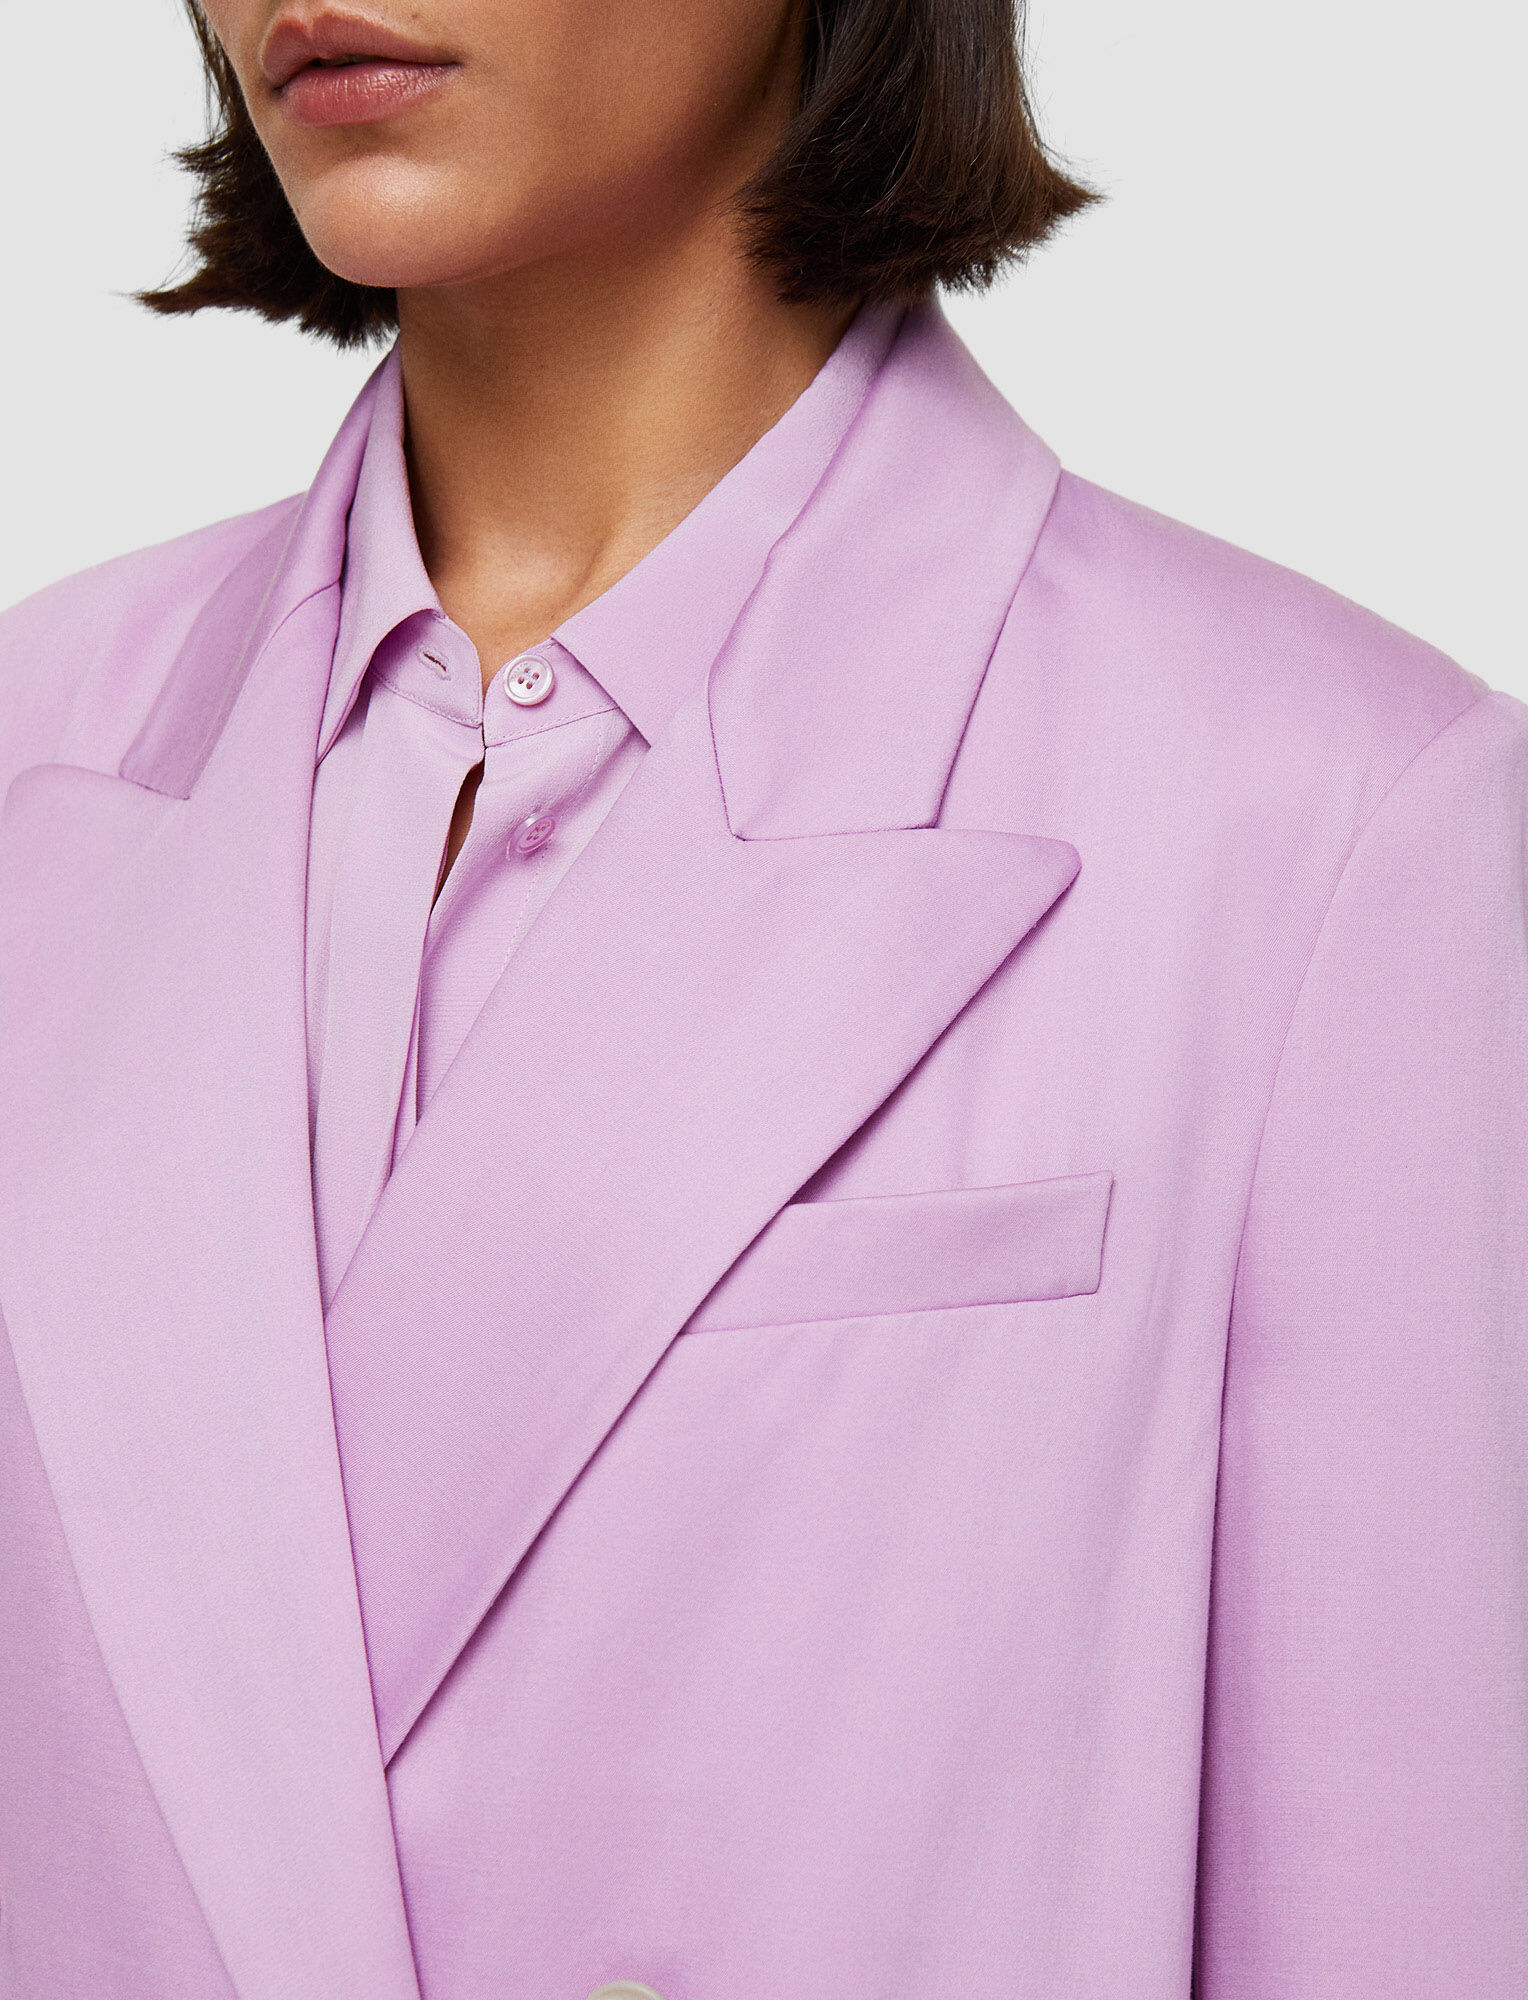 Joseph, Soft Viscose Tailoring Jaden Jacket, in Begonia Pink